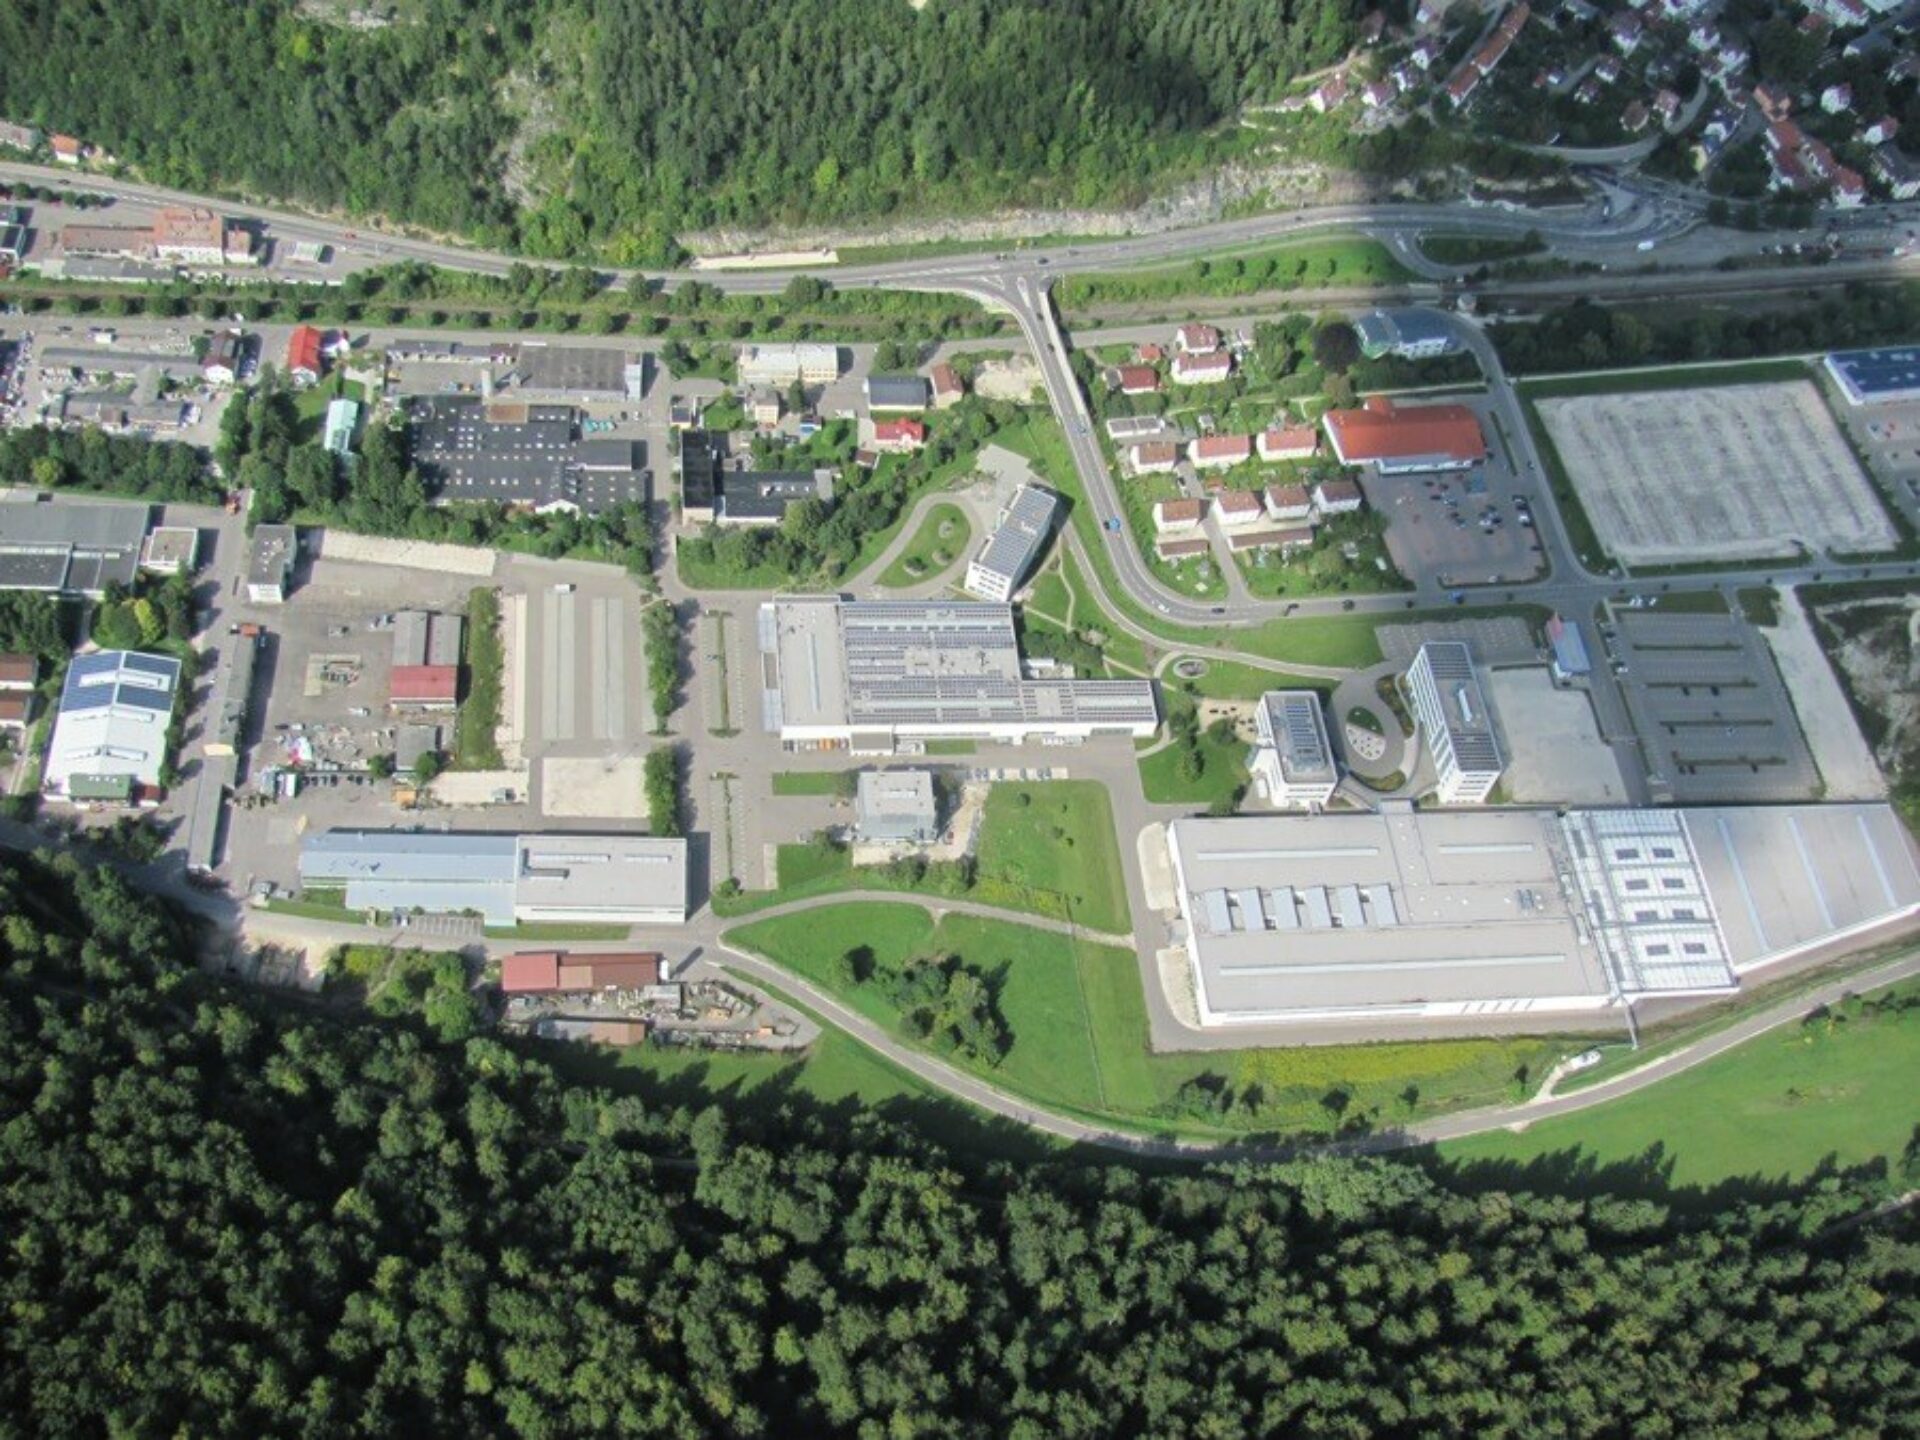 Centrotherm Fabrikerweiterung – Büro- und Produktionskomplex PV-Industrie1181